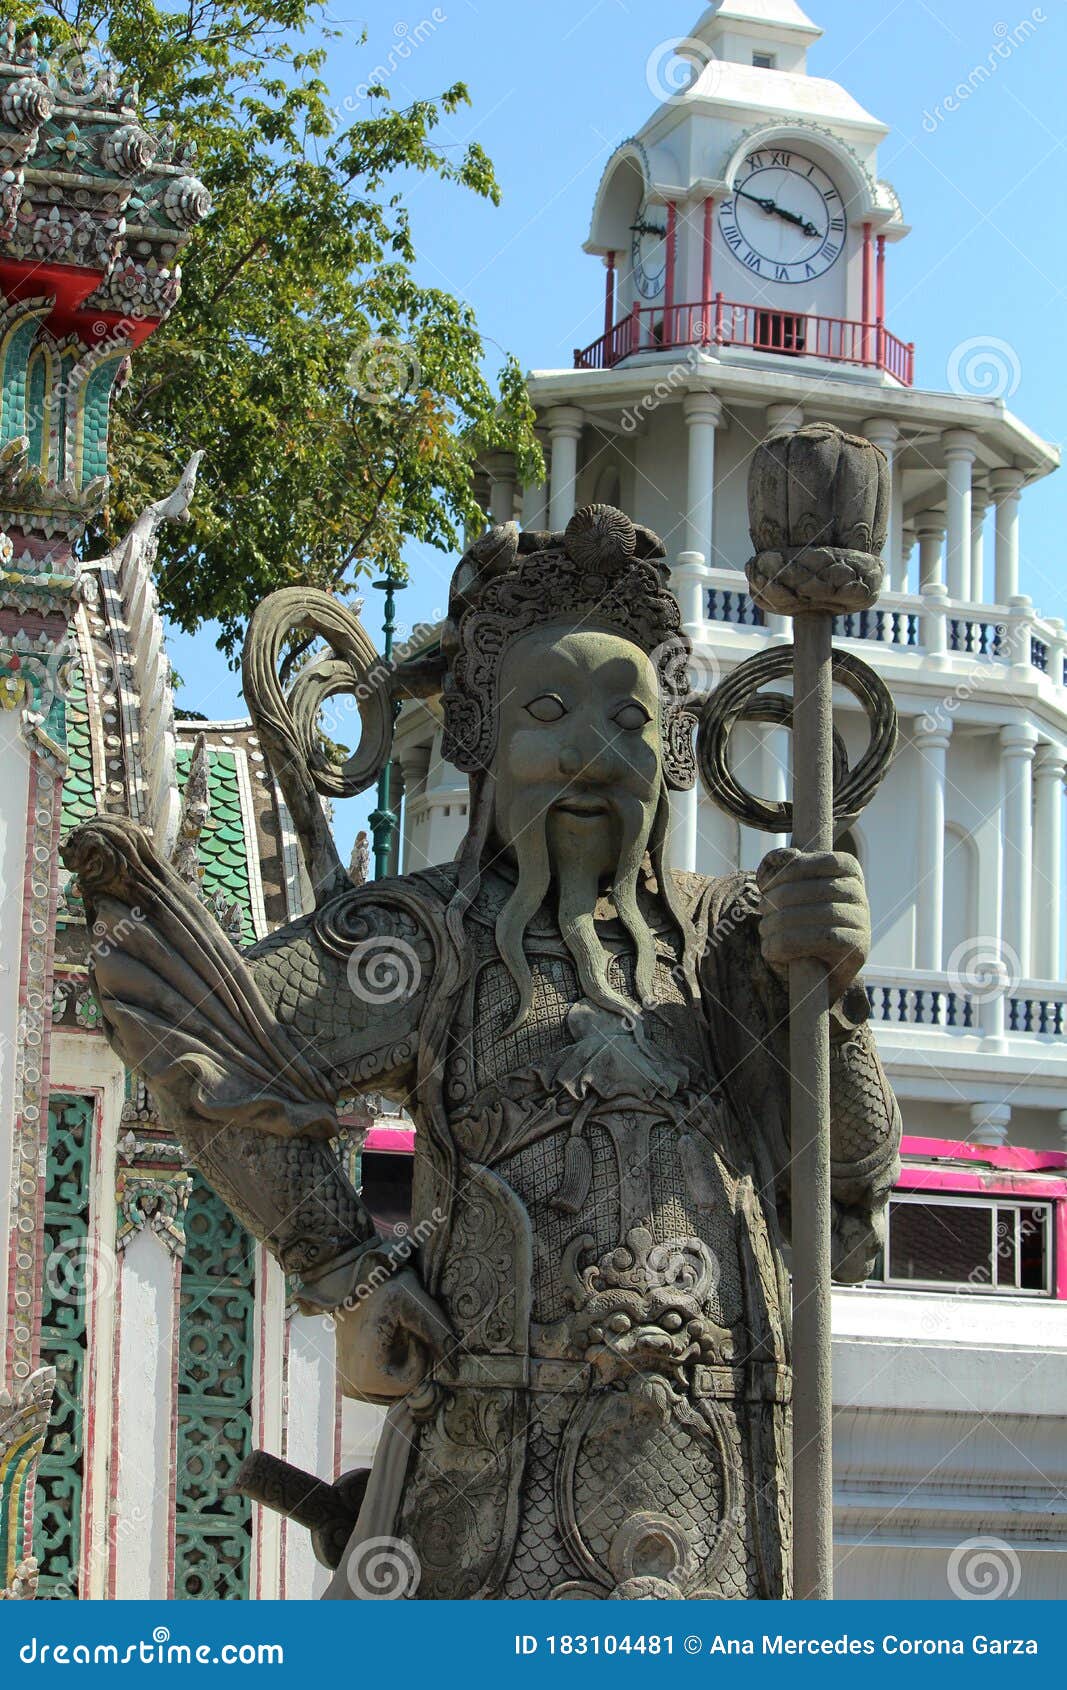 thai statue in bangkok thailand